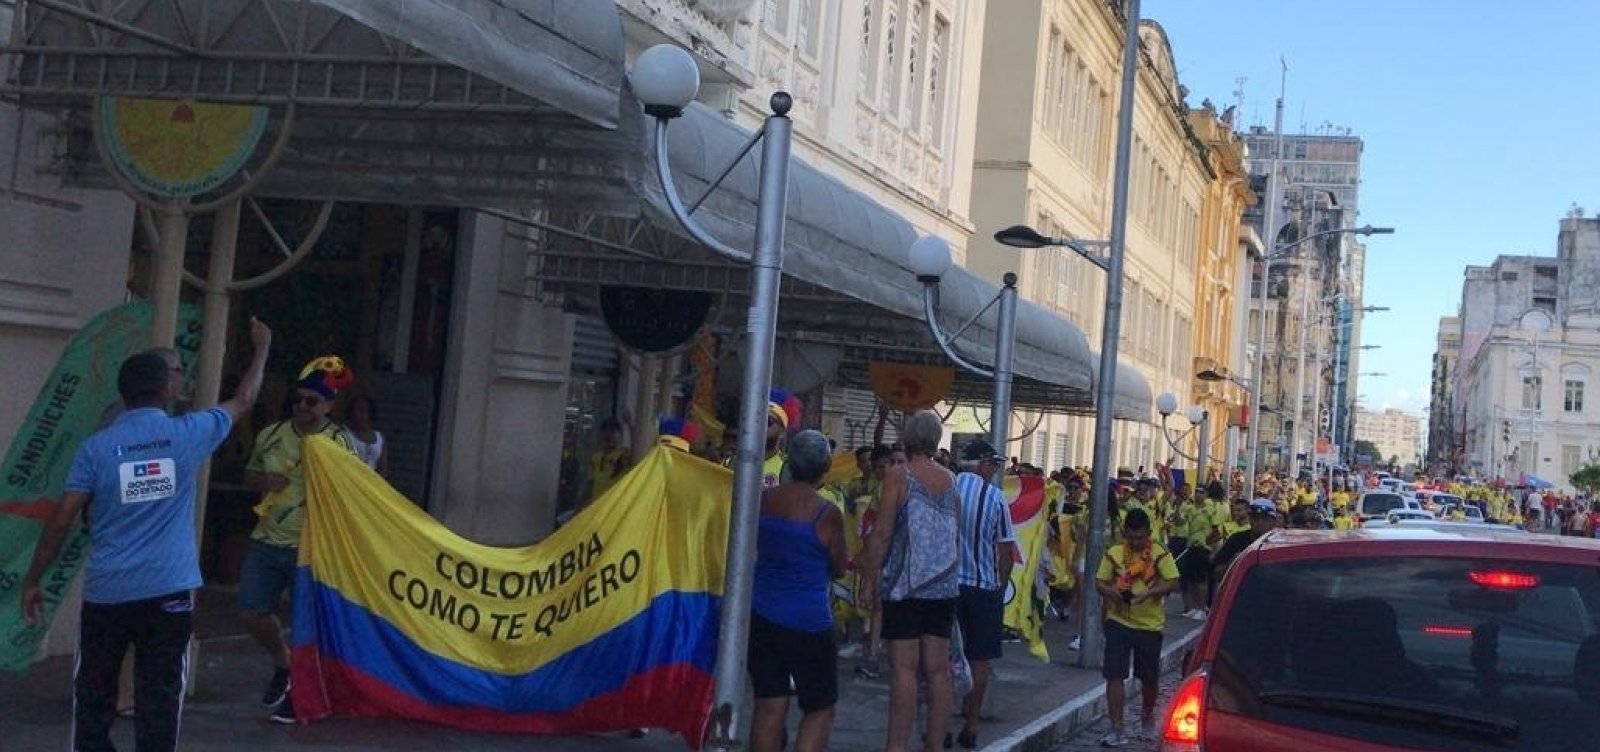 Colombianos envolvidos em briga na Fonte Nova devem deixar o Brasil